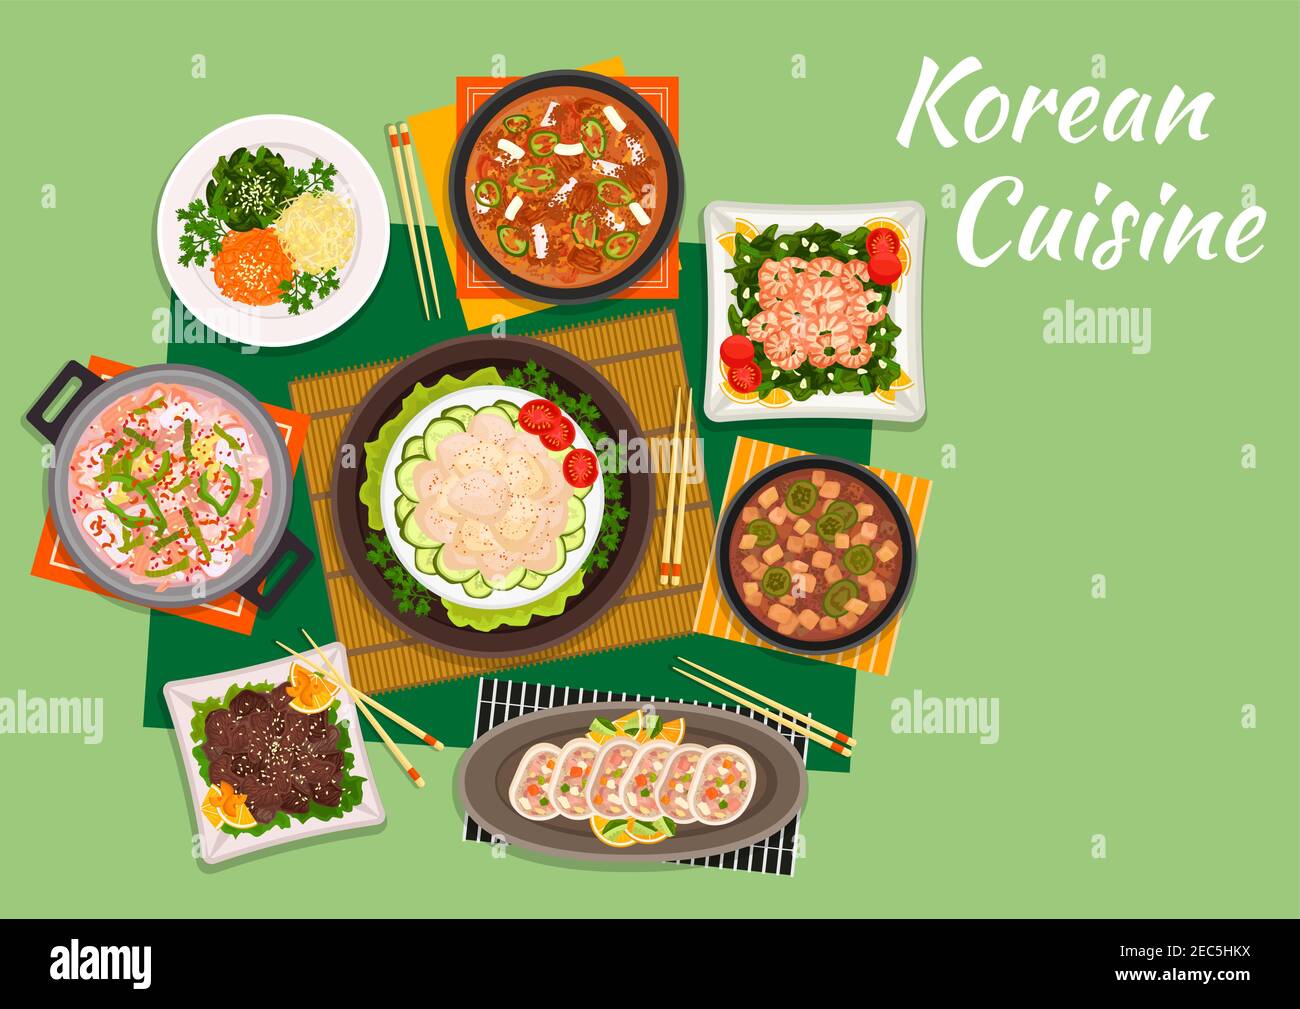 Cuisine coréenne bœuf bulgogi servi avec salade de légumes marinés et soupe de kimchi épicée, salade de pétoncles, crevettes frites aux épinards, soupe de fruits de mer, stuf Illustration de Vecteur